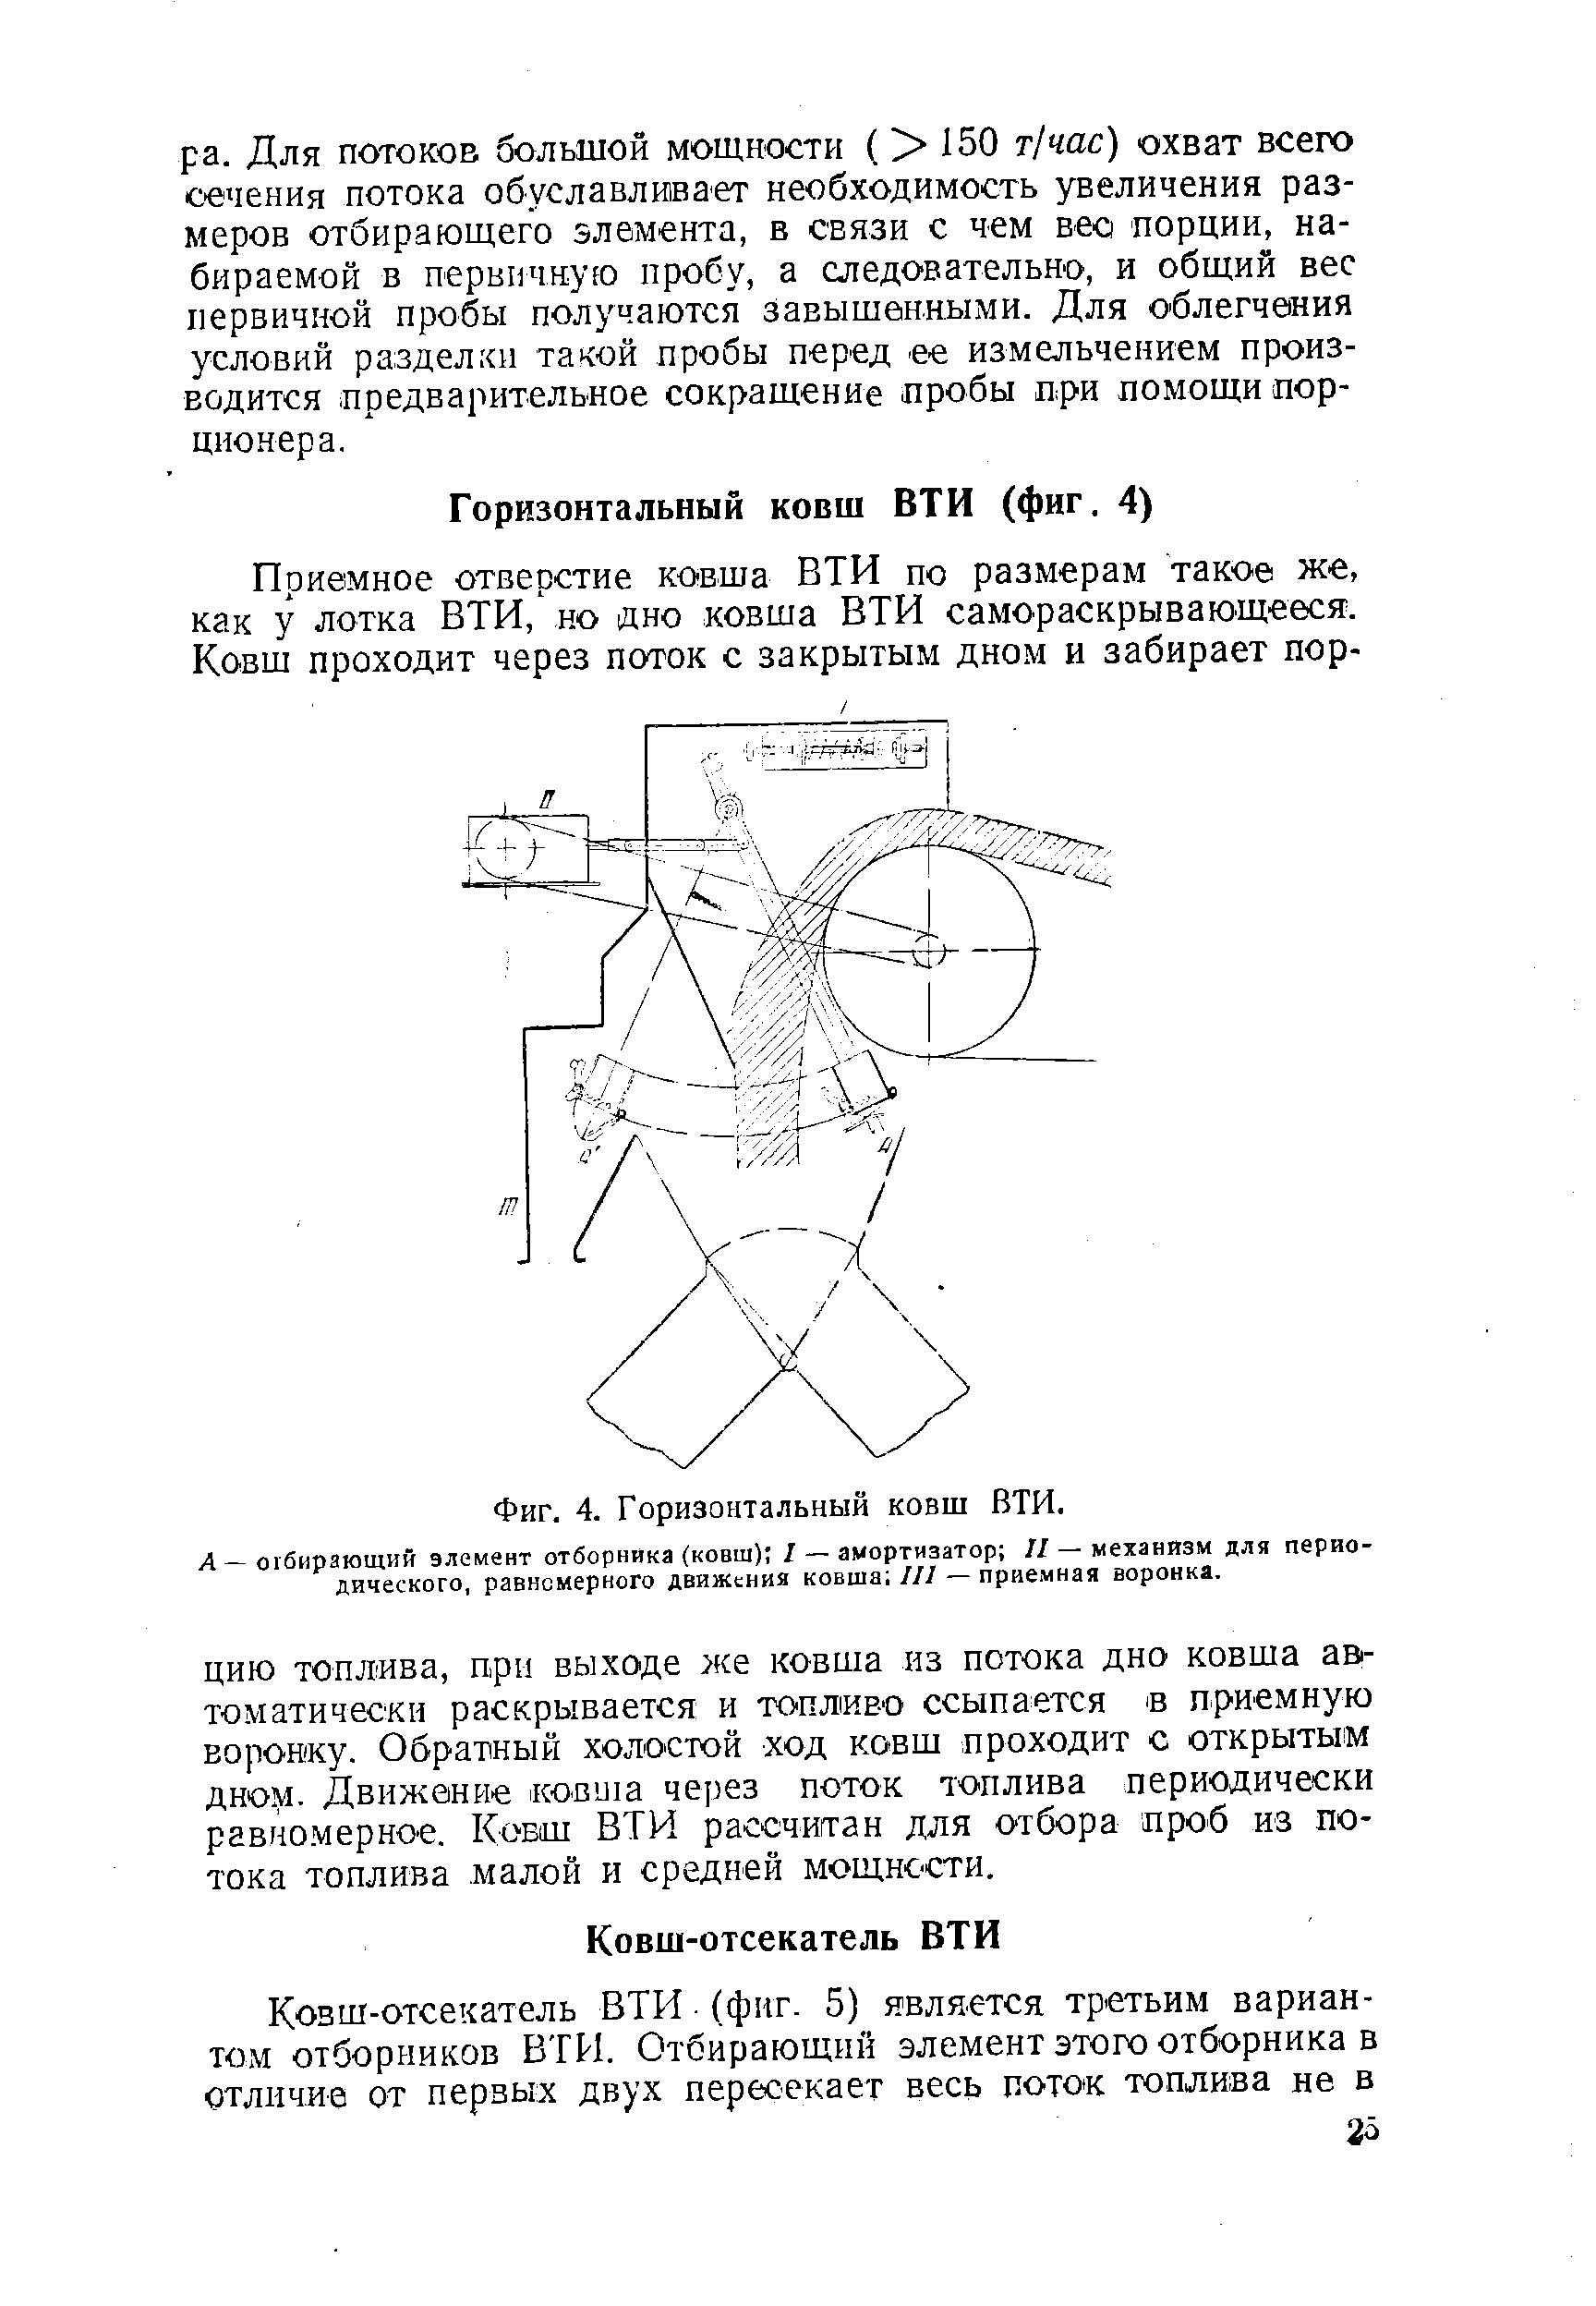 Л — отбирающий элемент отборника (ковш) 1 — амортизатор II — механизм для периодического, равномерного движения ковша III — приемная воронка.